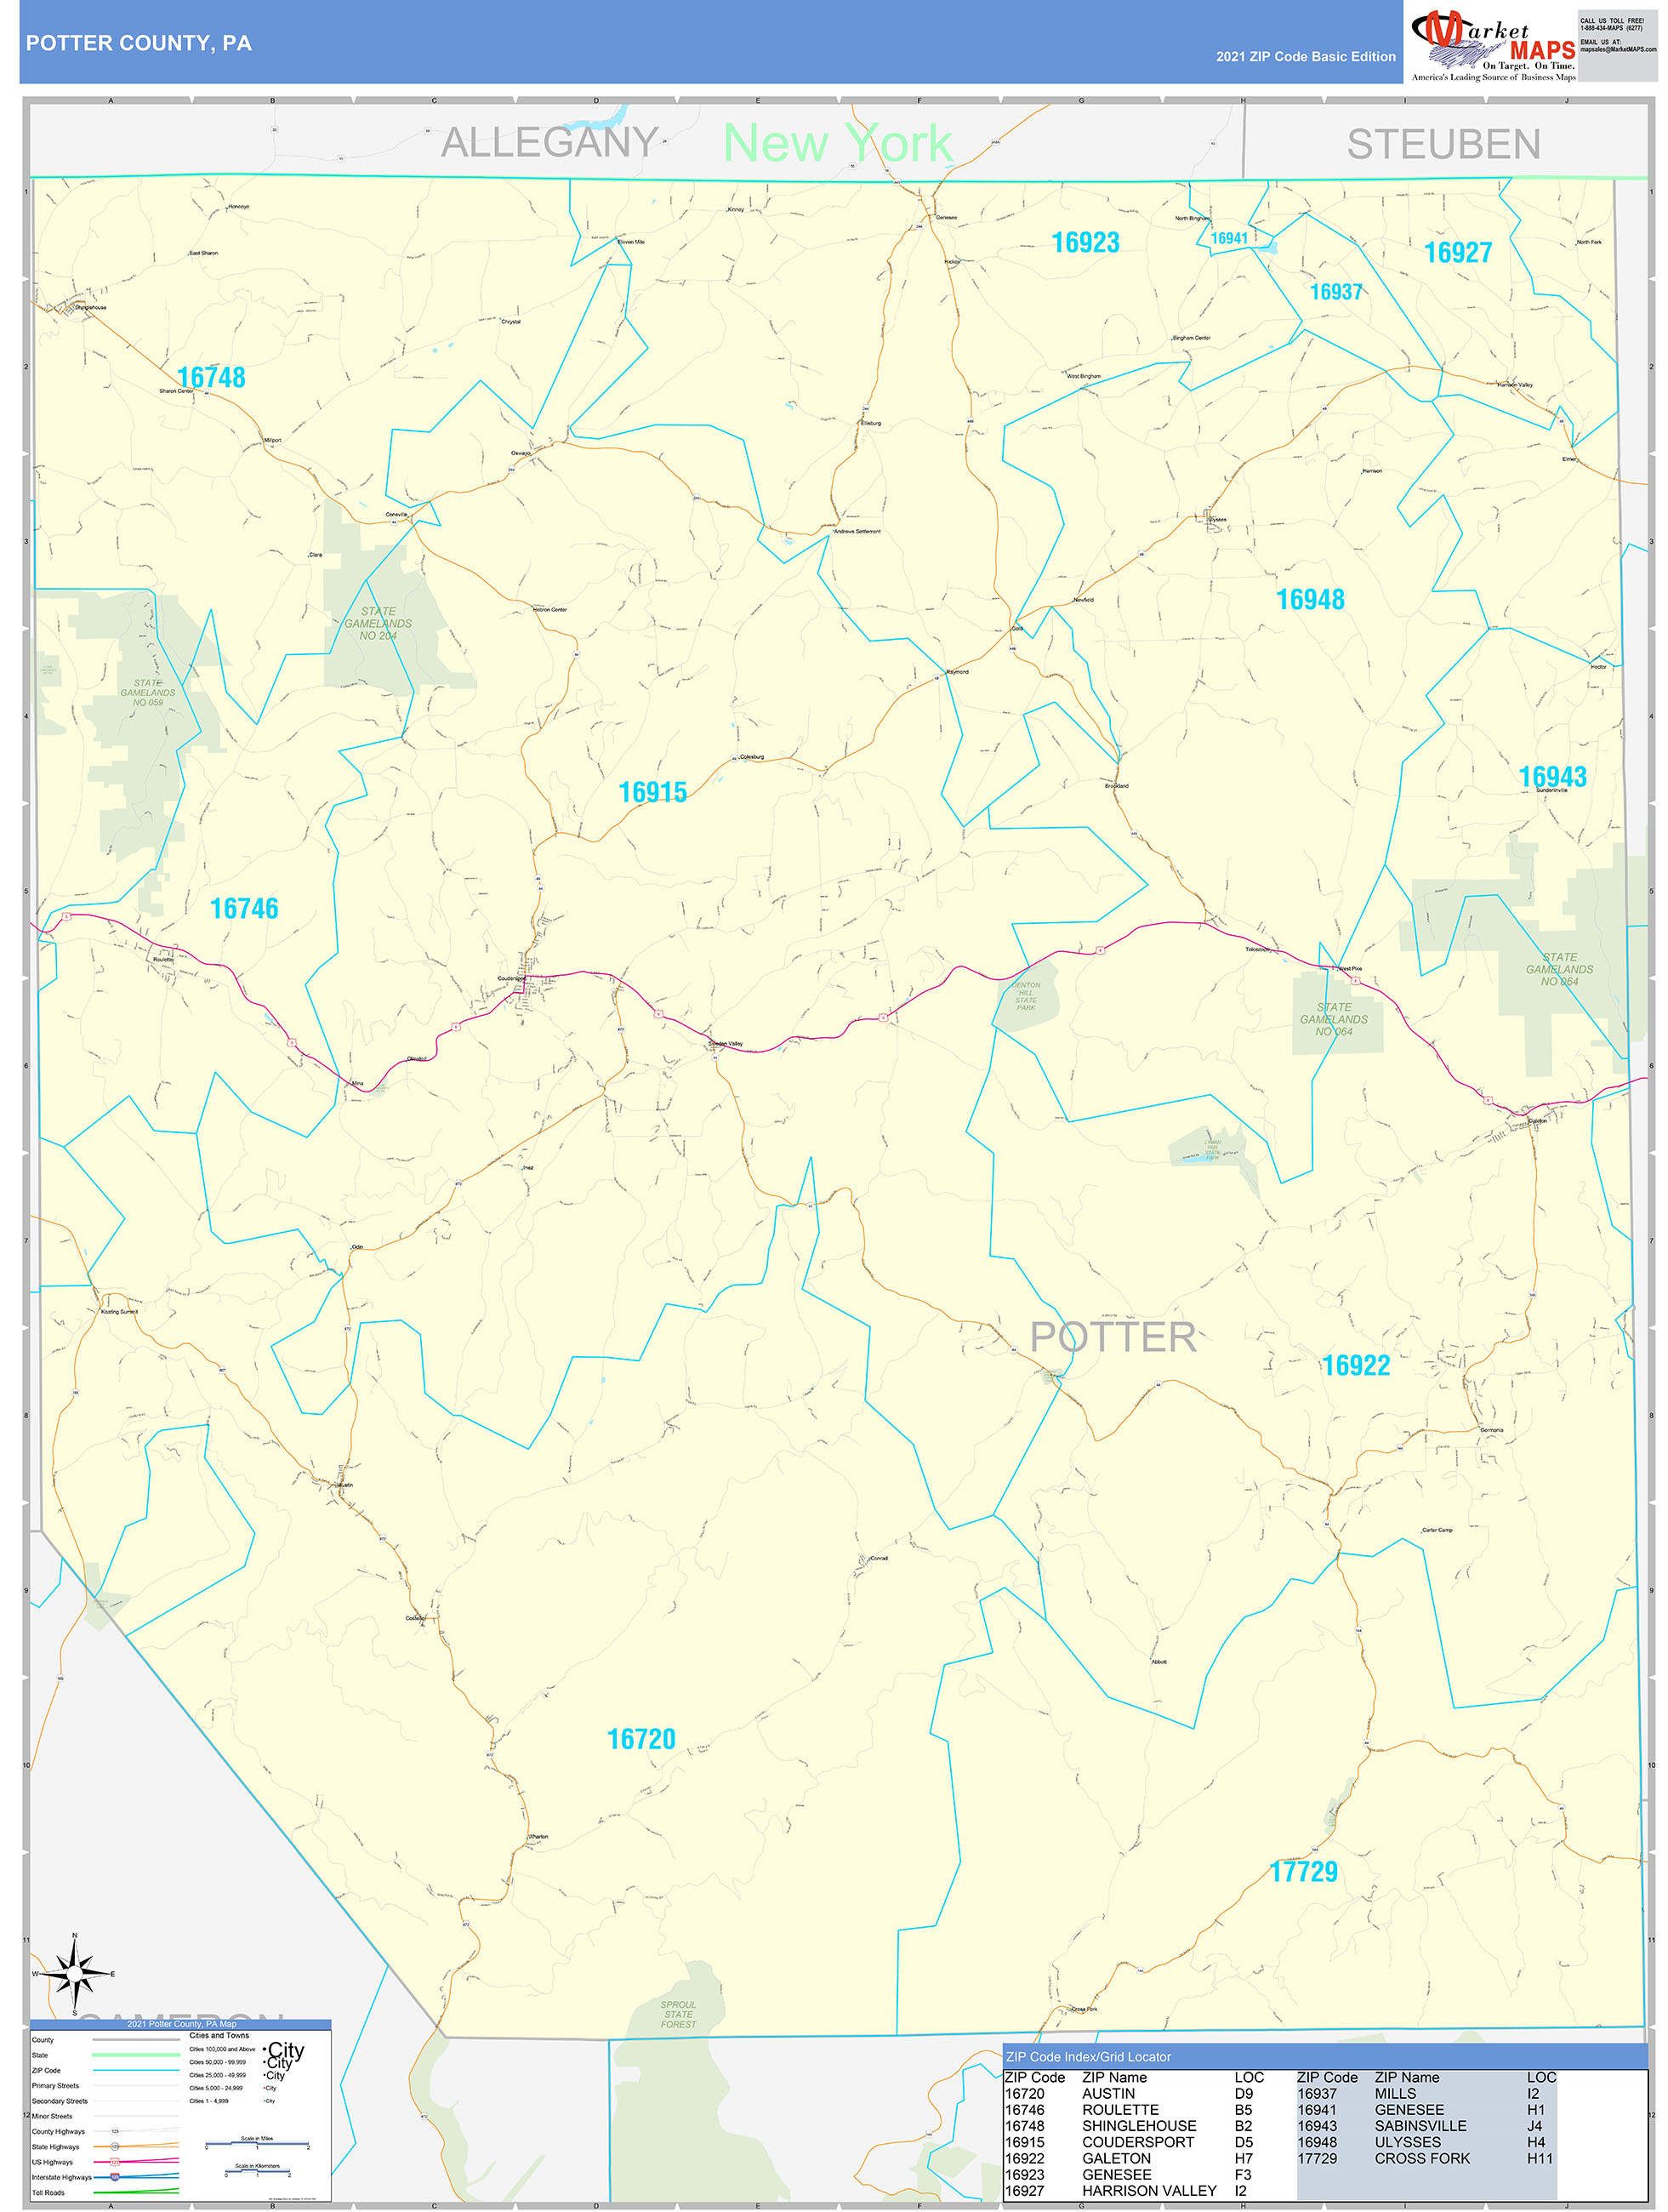 Potter County, PA Zip Code Wall Map Basic Style by MarketMAPS MapSales